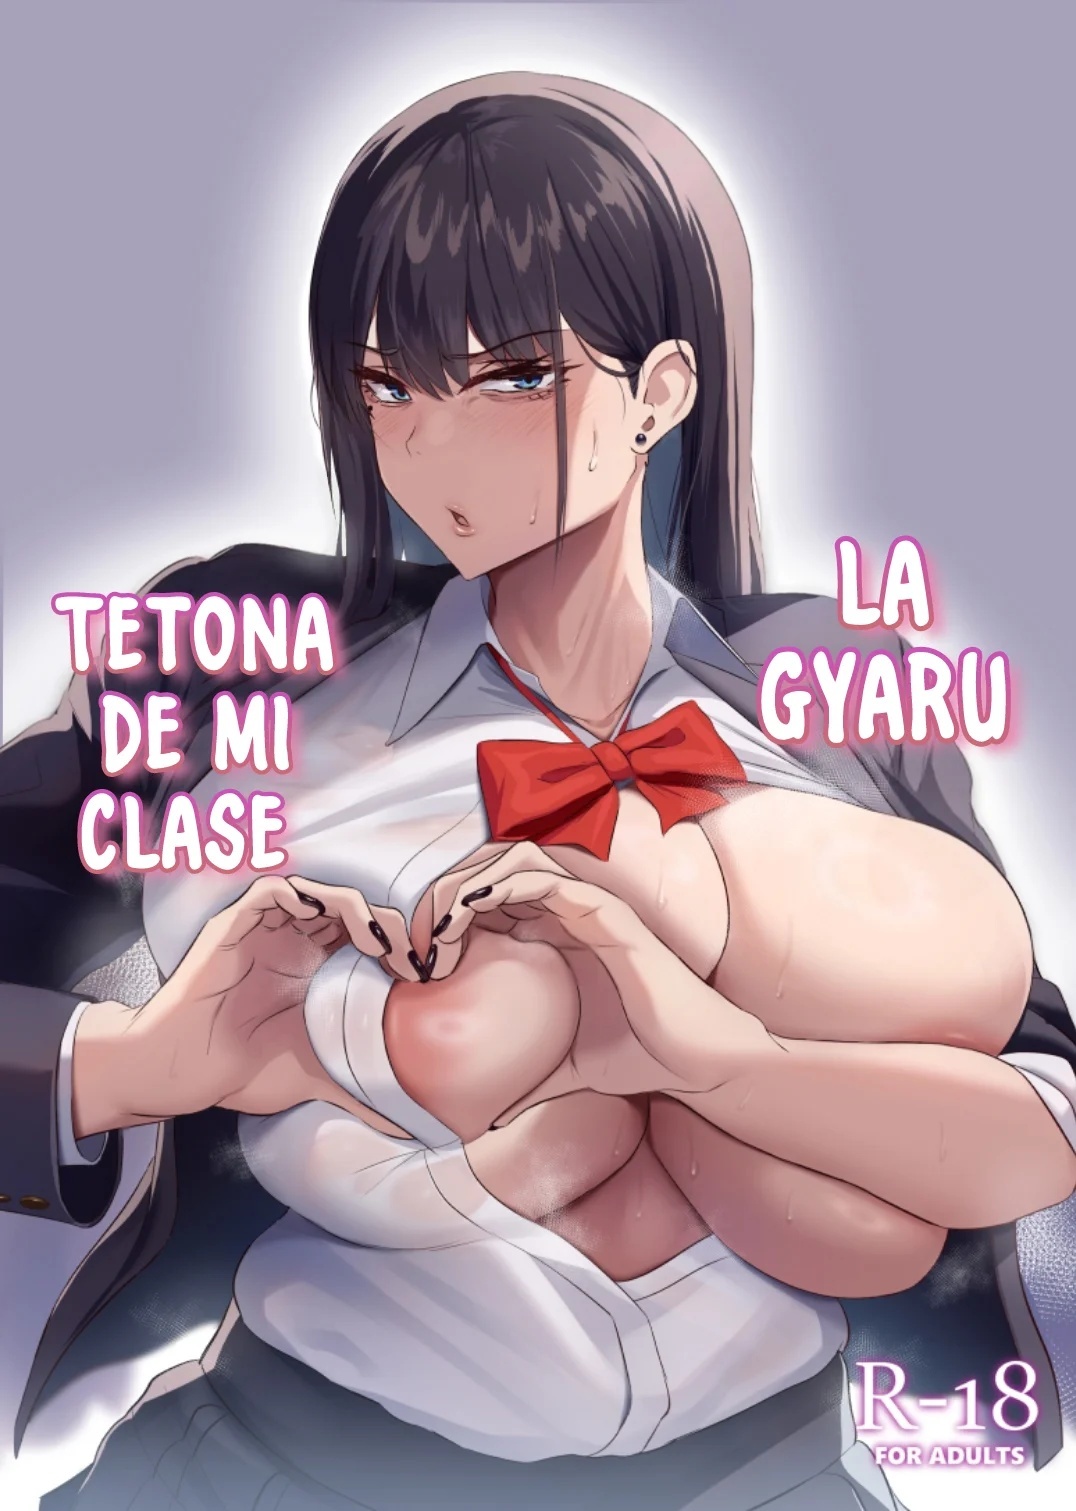 LA GYARU TETONA DE MI CLASE - 0